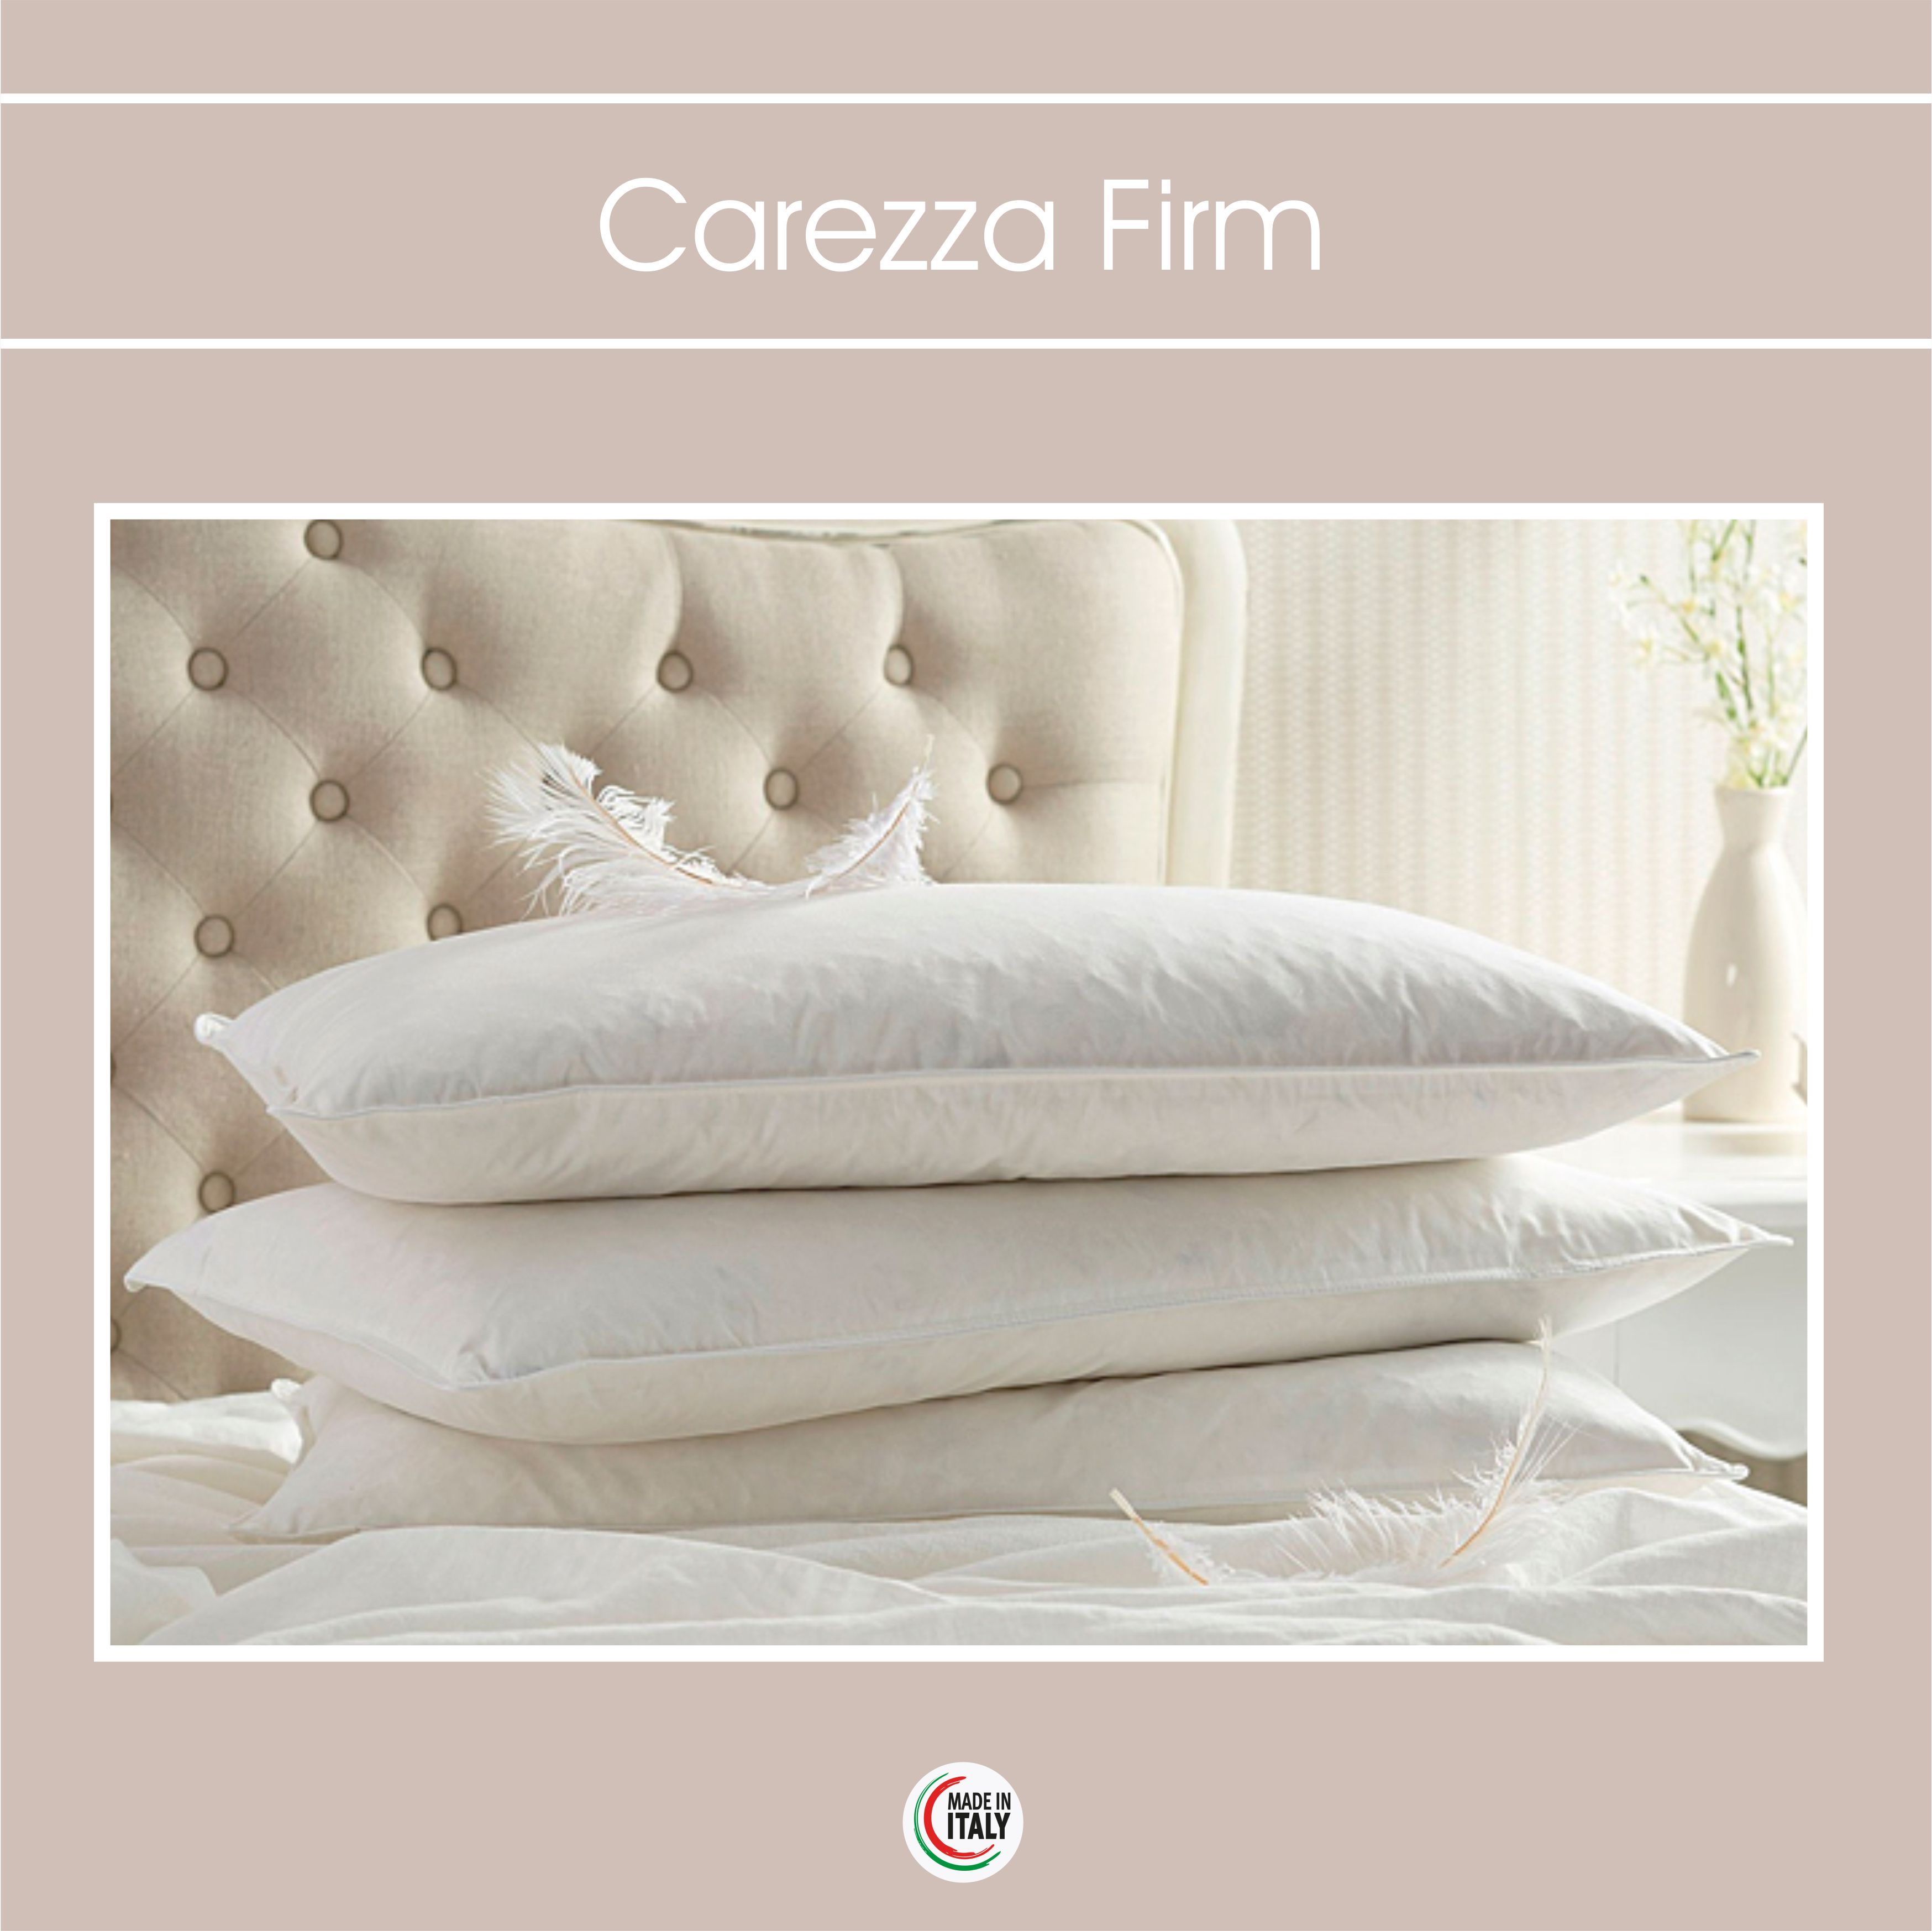 Carezza Firm